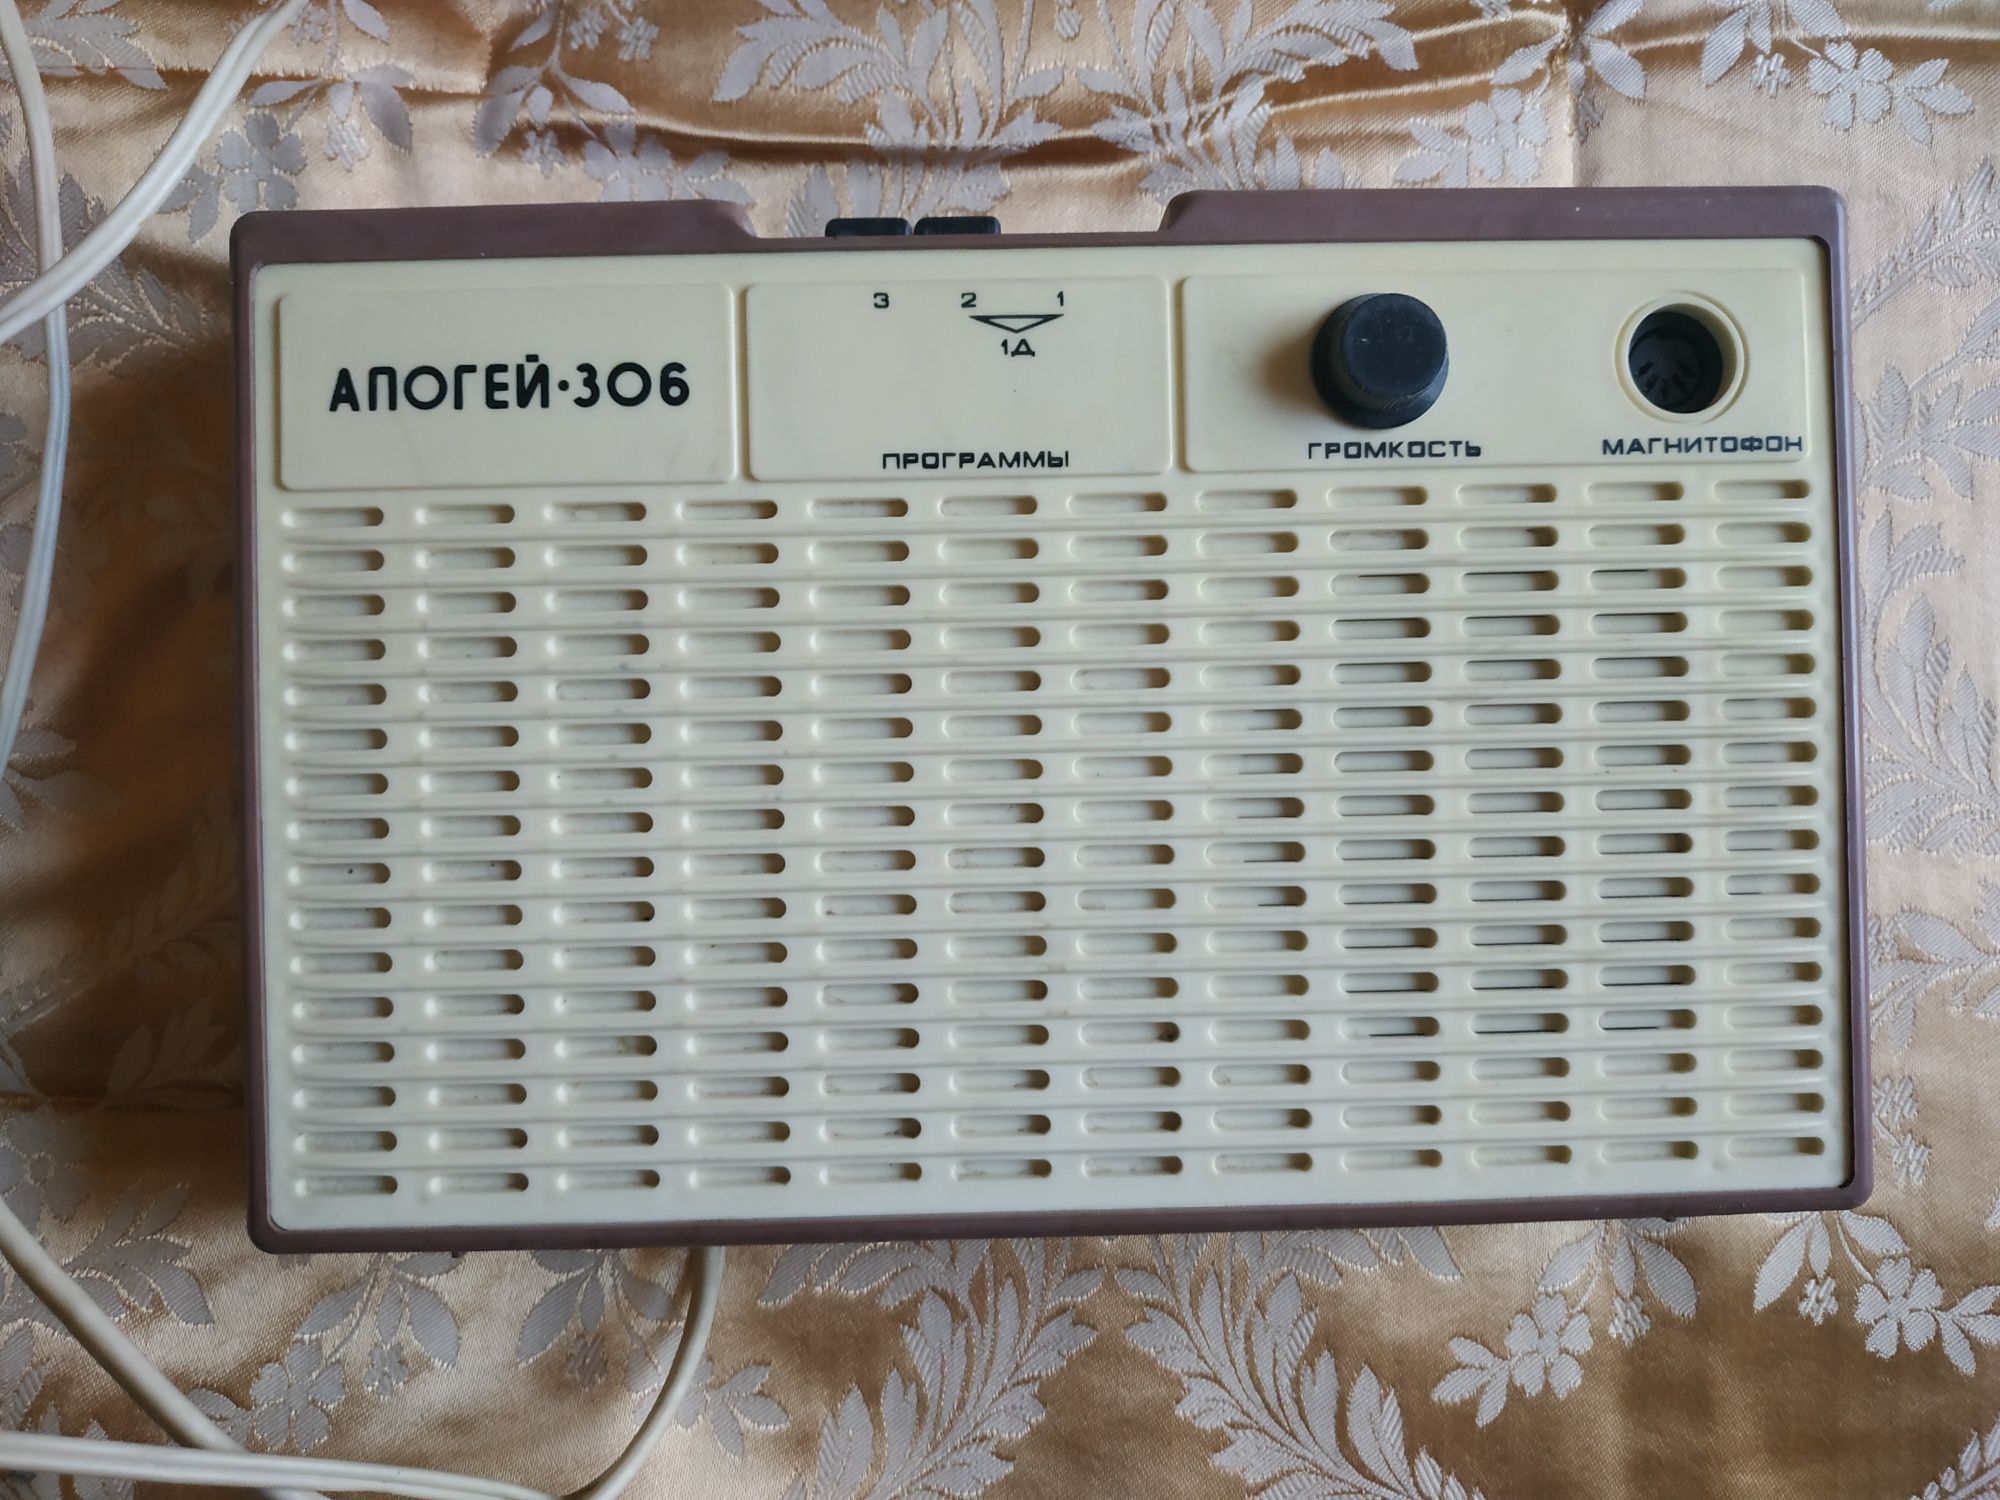 Советские радиоприемники трехпрограммные Украина-ПТ-303 и Апогей-306